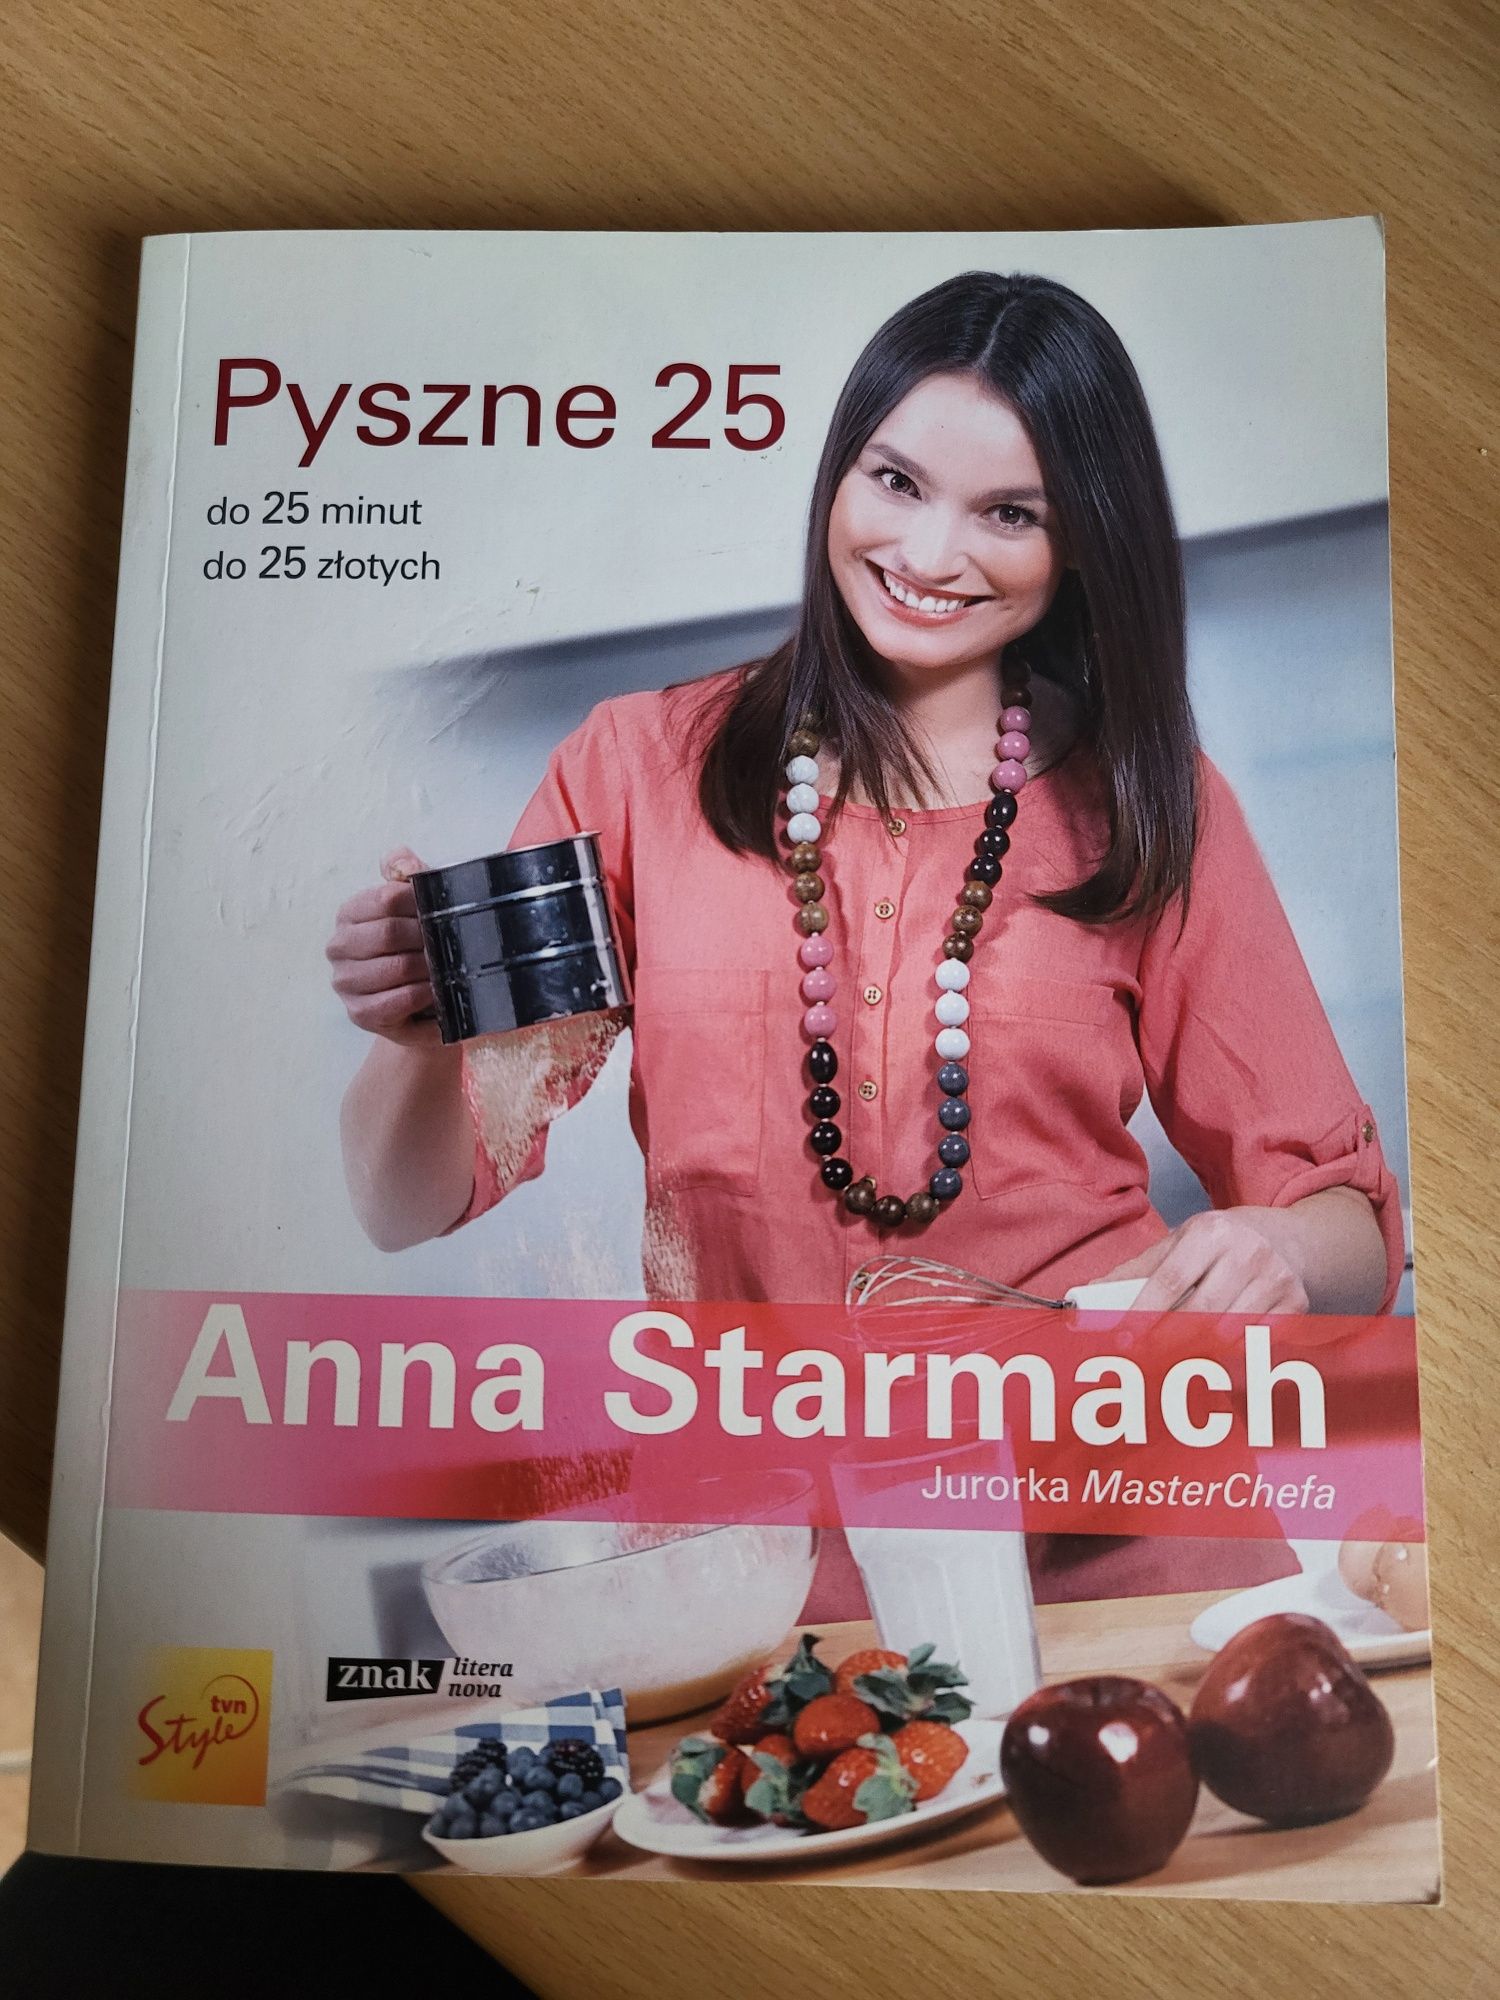 Pyszne 25 Anna Starmach